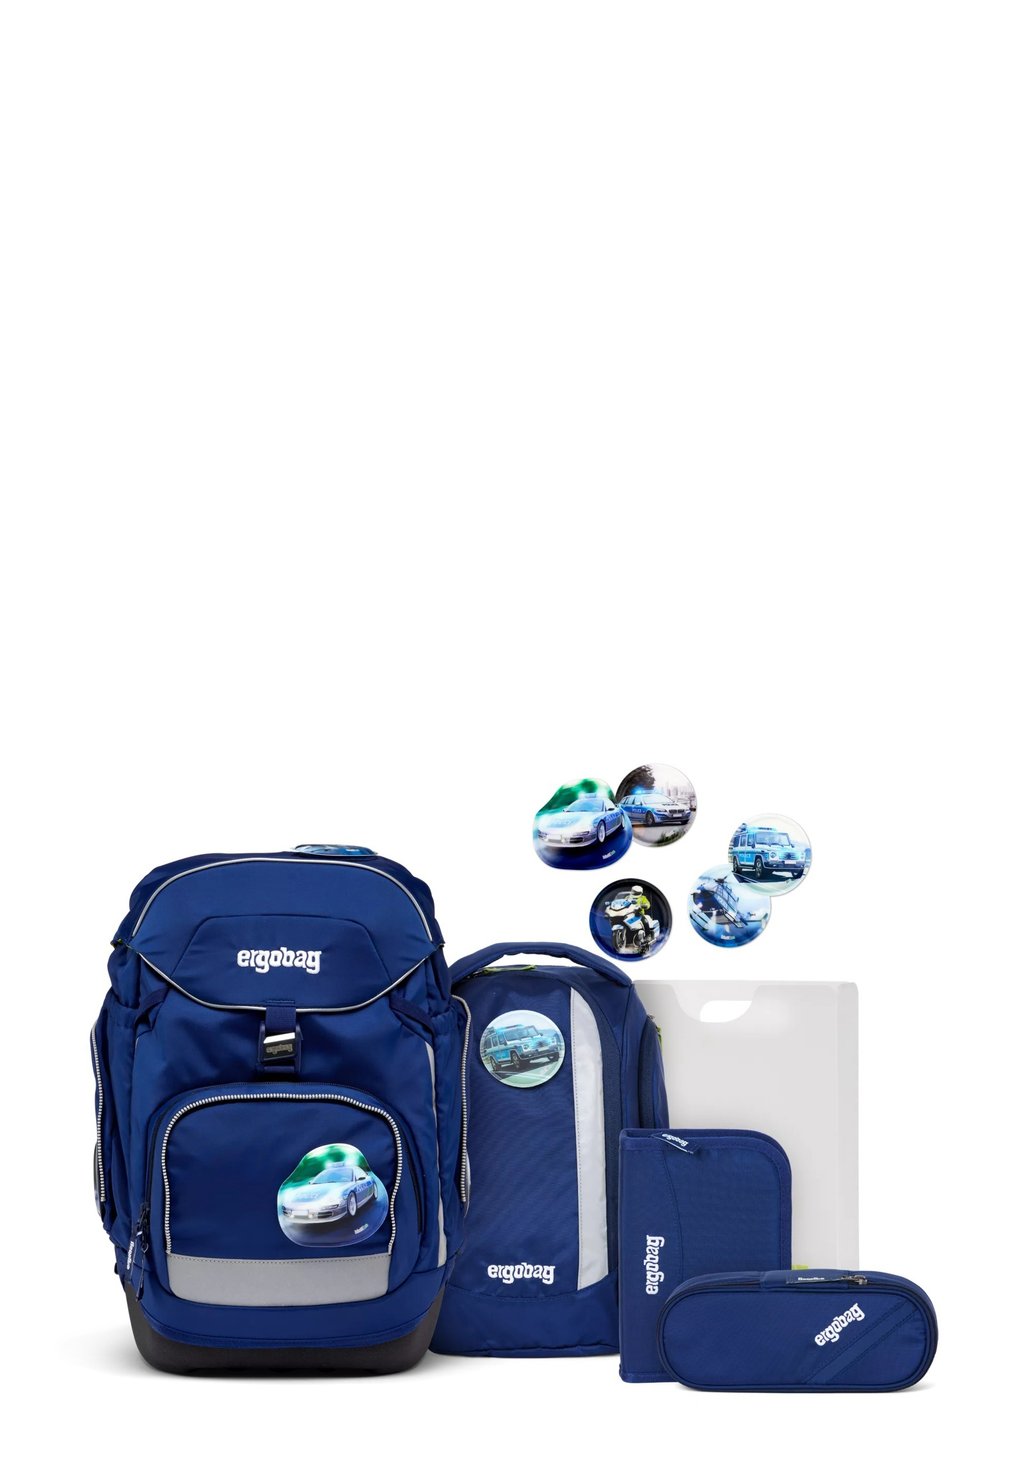 Комплект школьных сумок LUMI-EDITION Ergobag, цвет blau